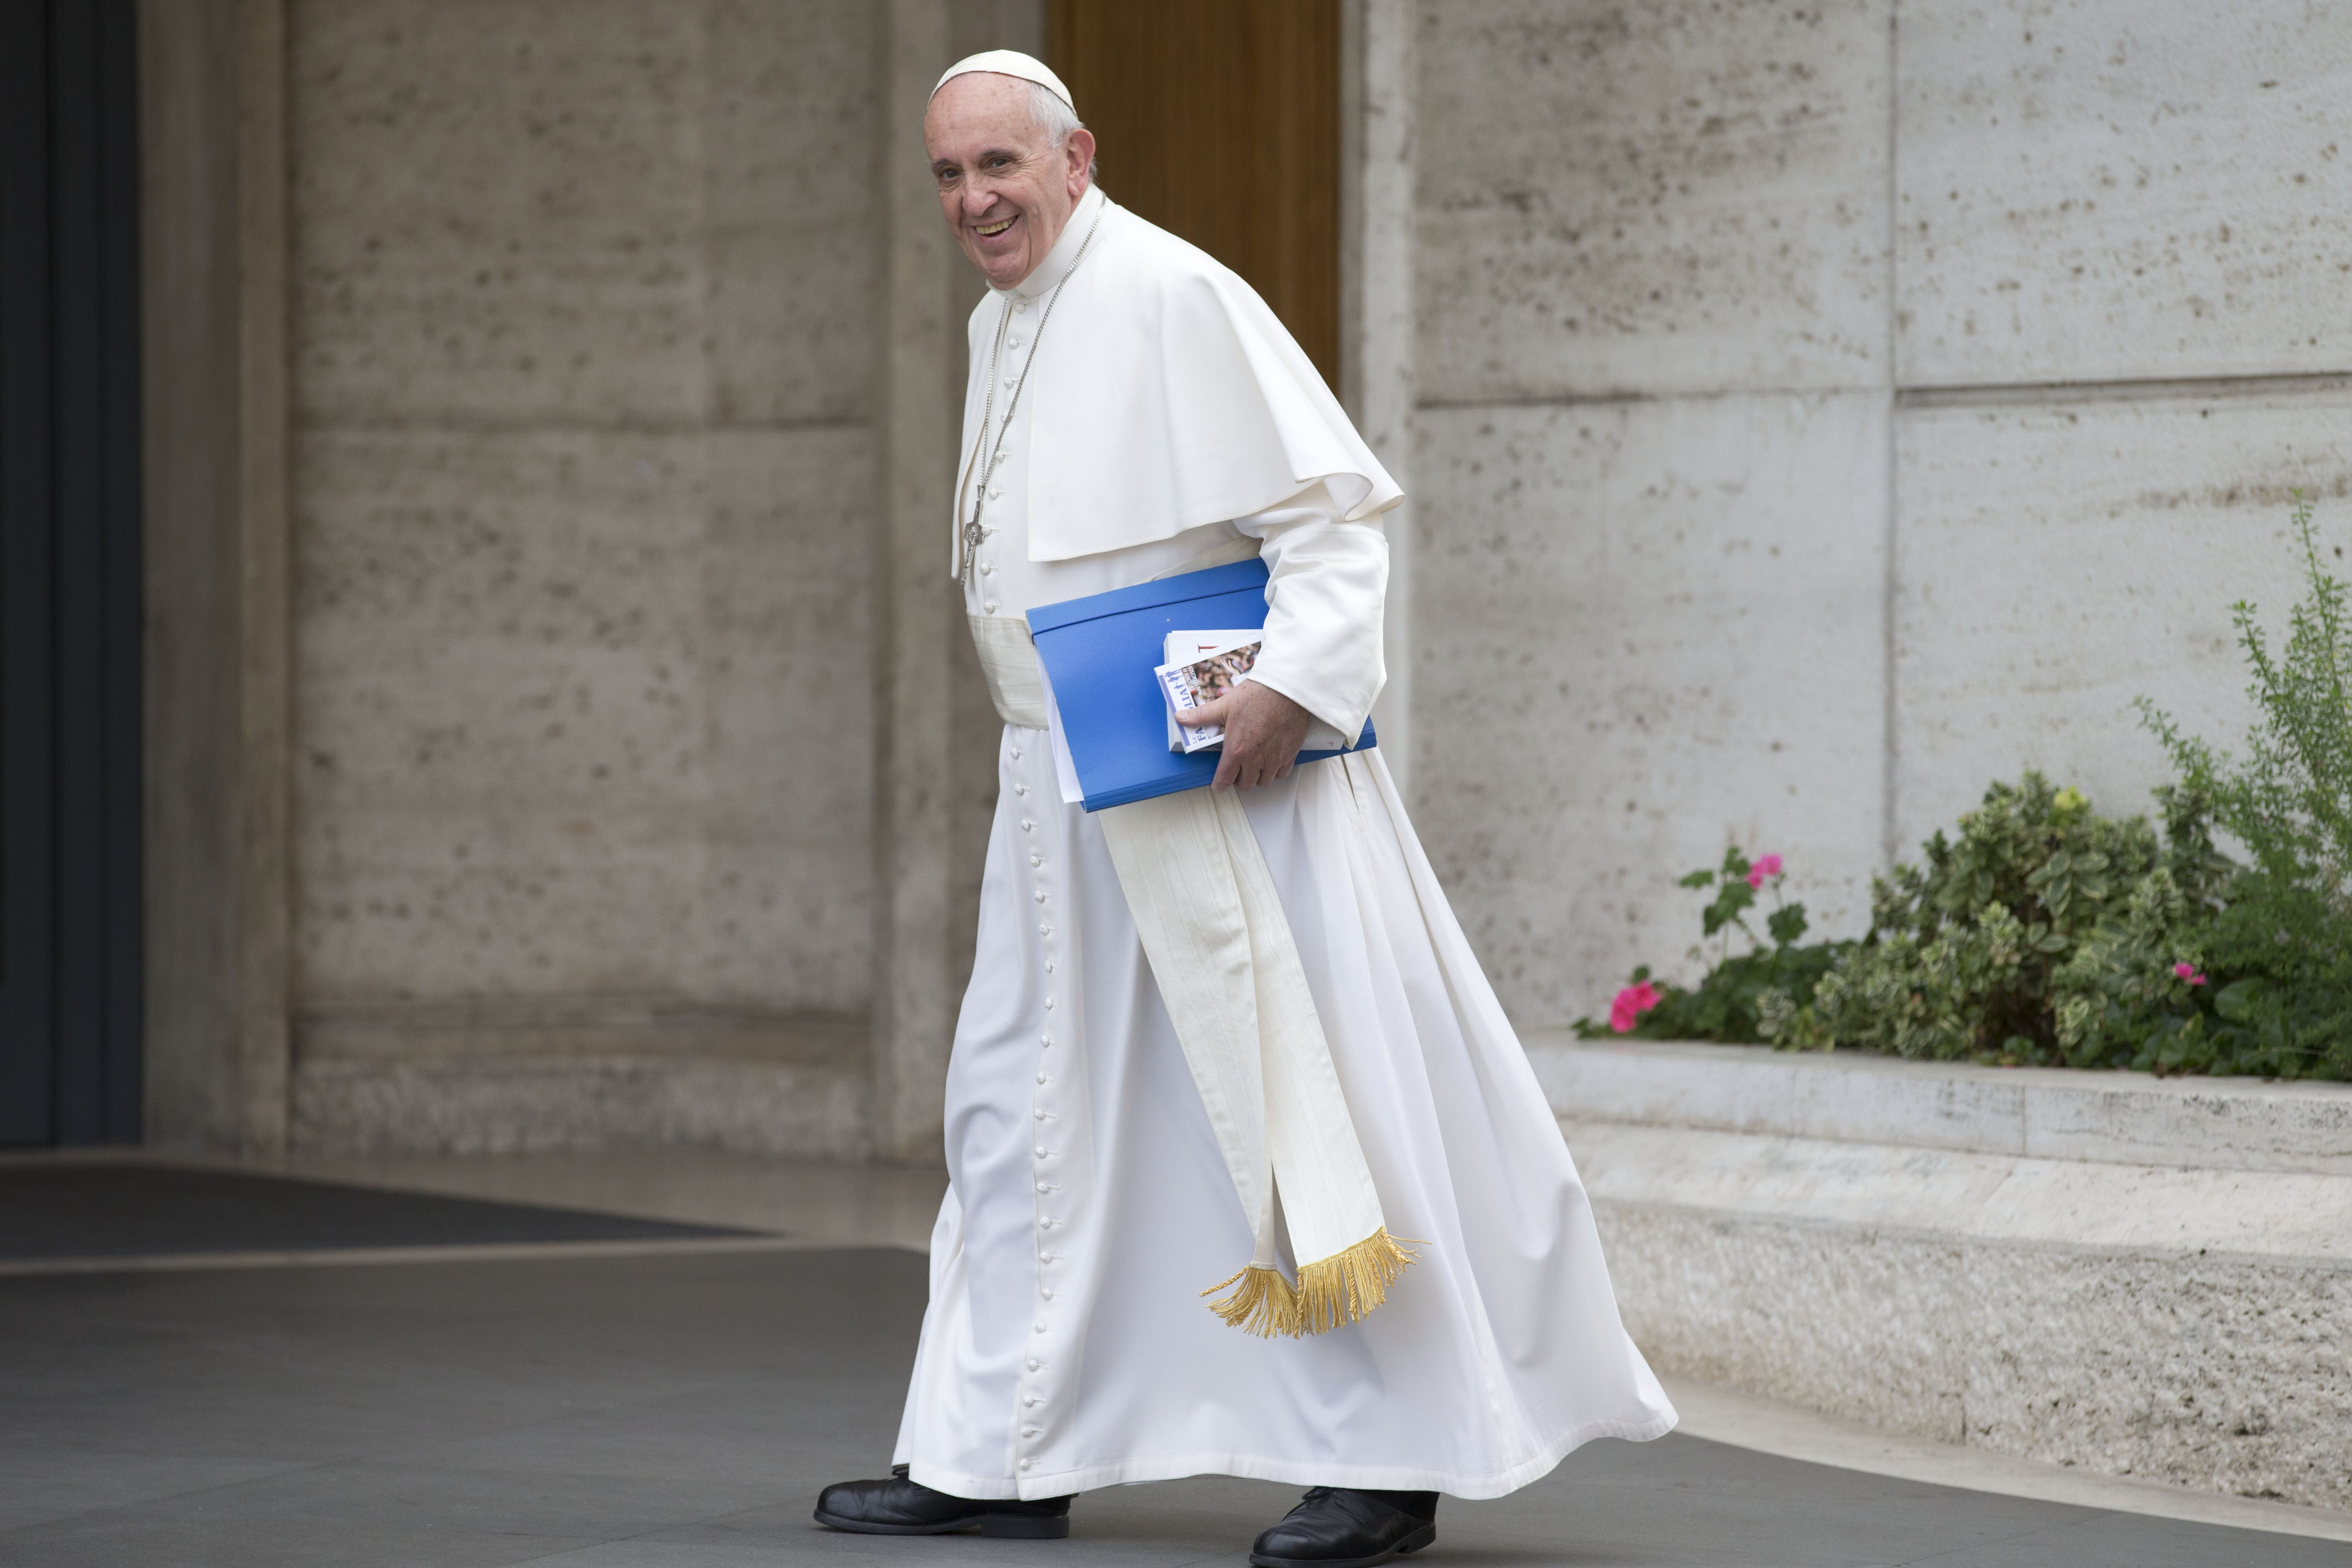 Βατικανό: Διαψεύδει ότι ο Πάπας έχει όγκο στον εγκέφαλο